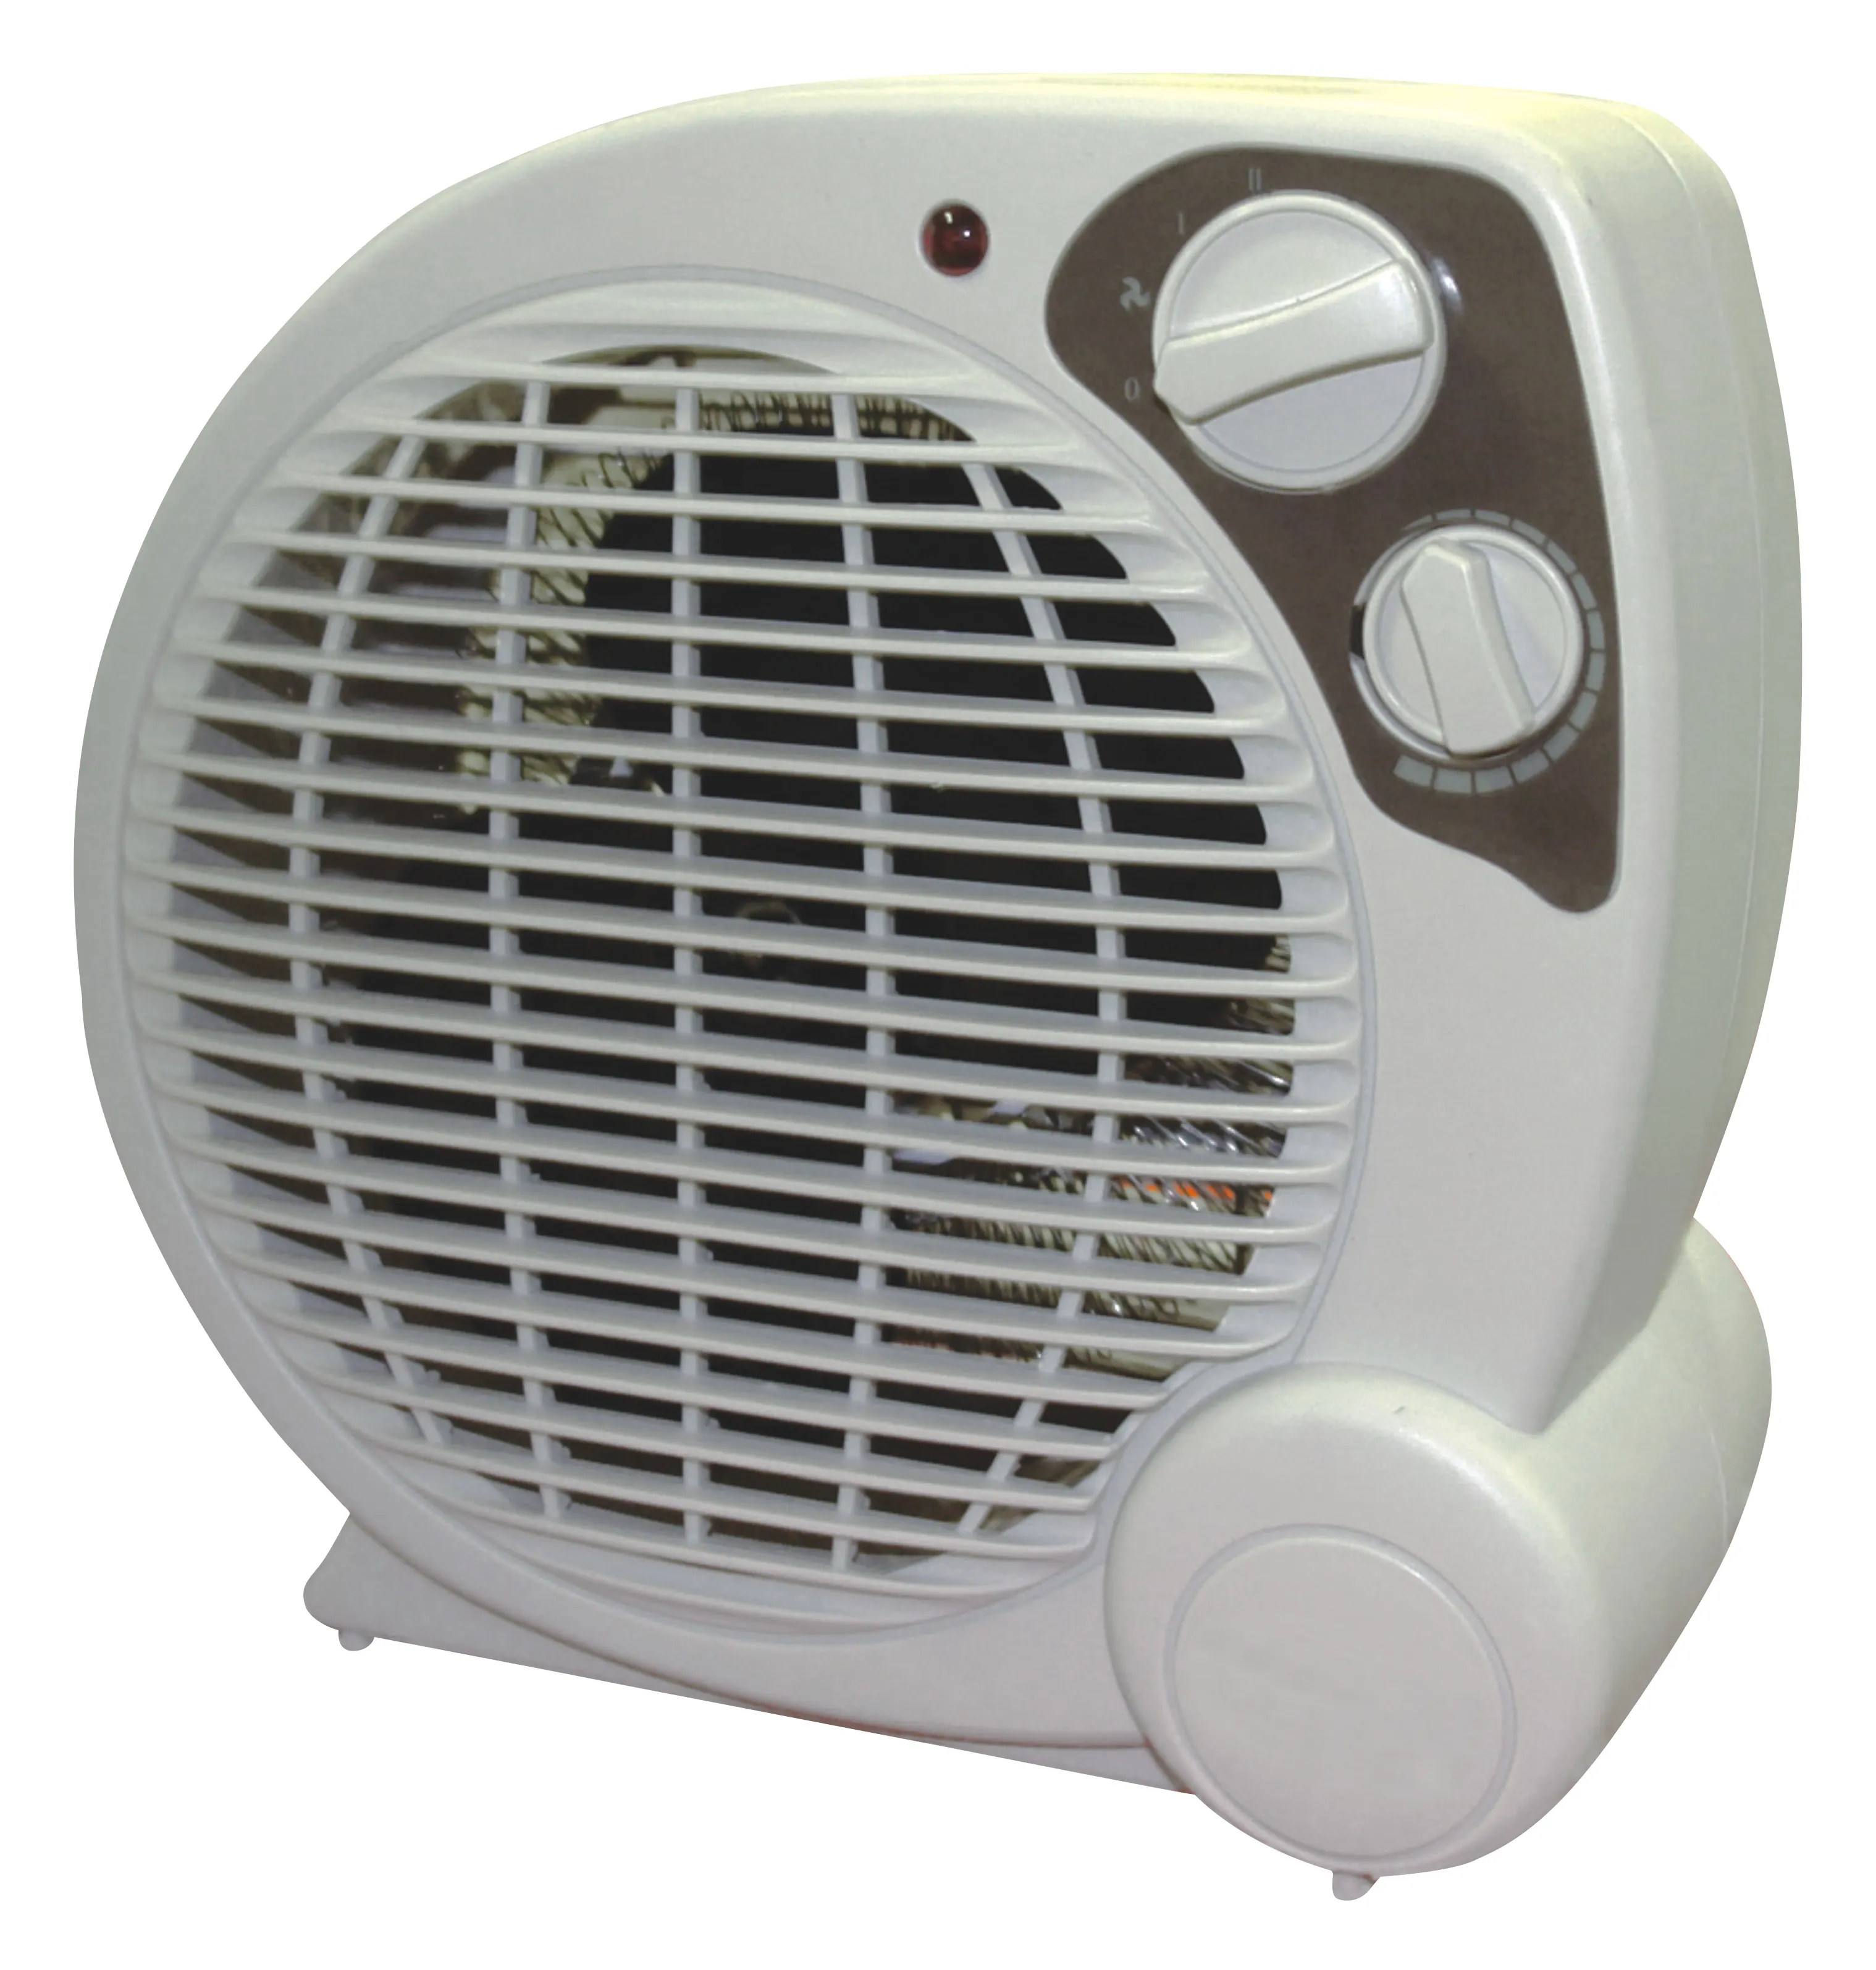 Ayarlanabilir termostat kontrolü ile çok fonksiyonlu masaüstü mini taşınabilir fan ısıtıcı en çok satan